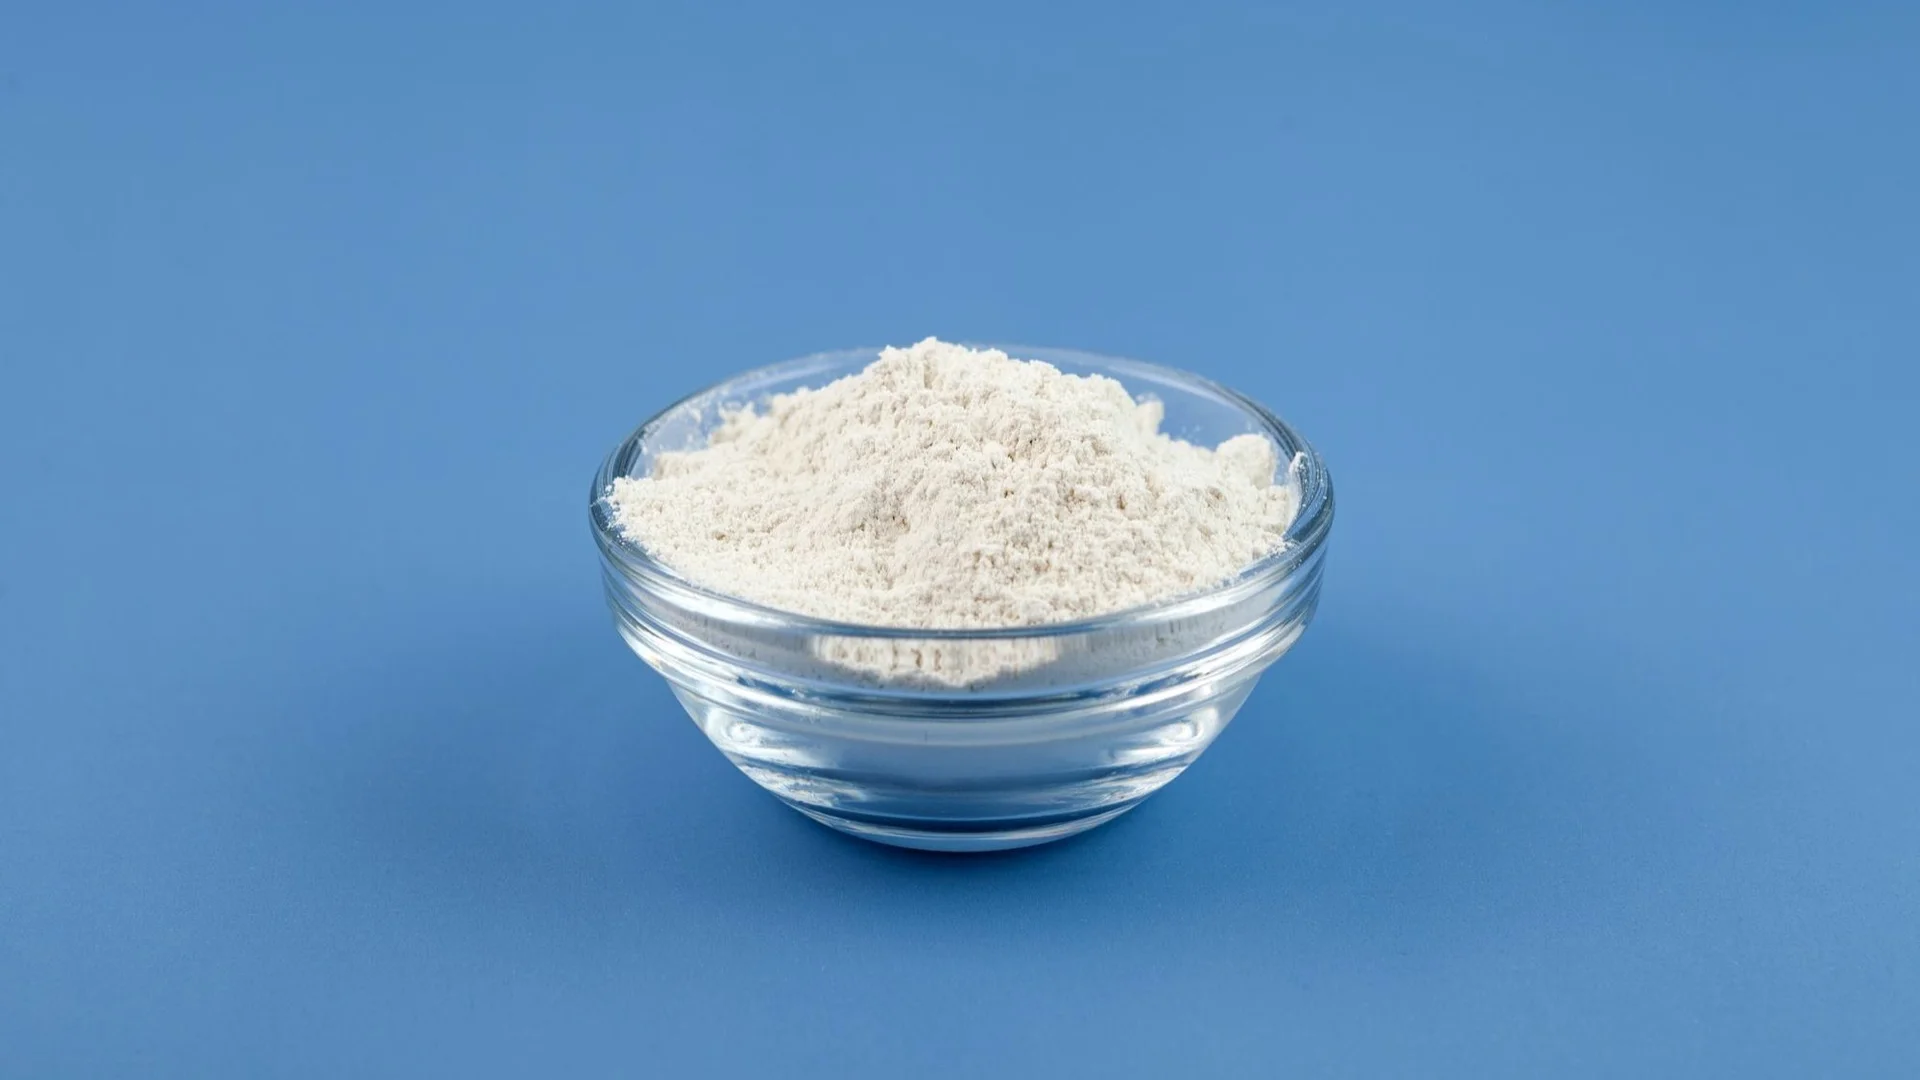 100 cc of flour: 100 ml of flour